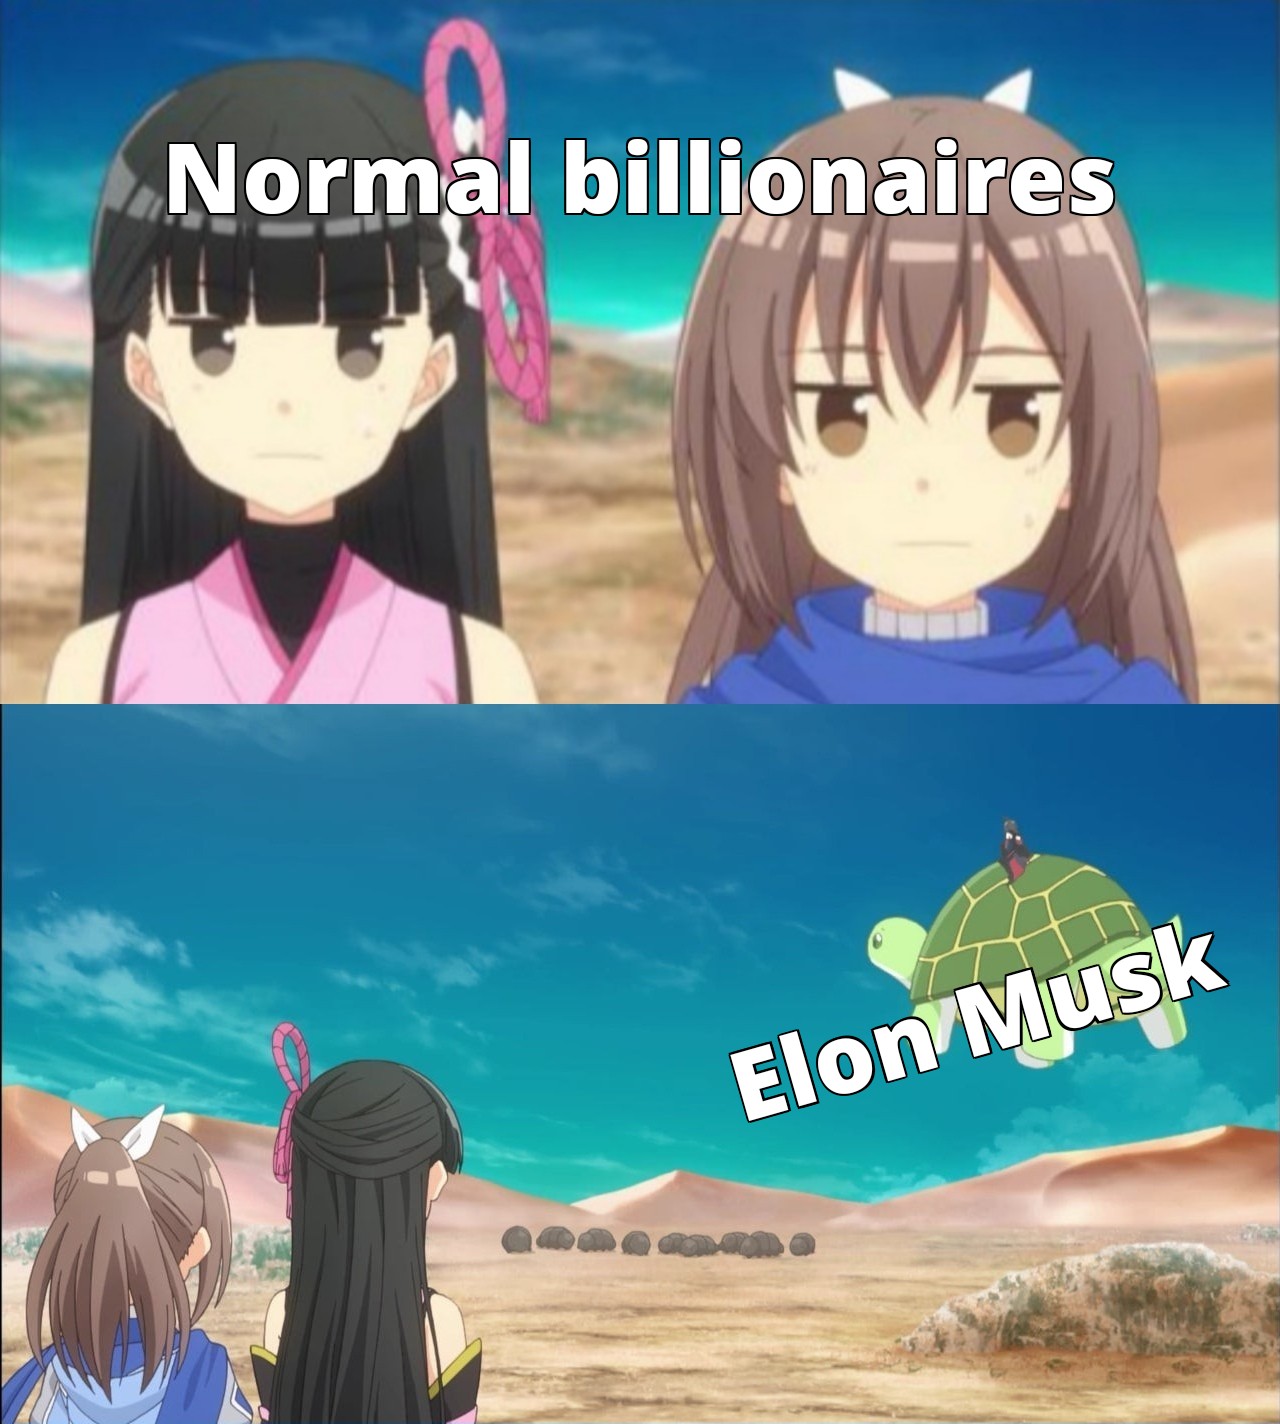 Anime - Normal billionaires Elon Musk